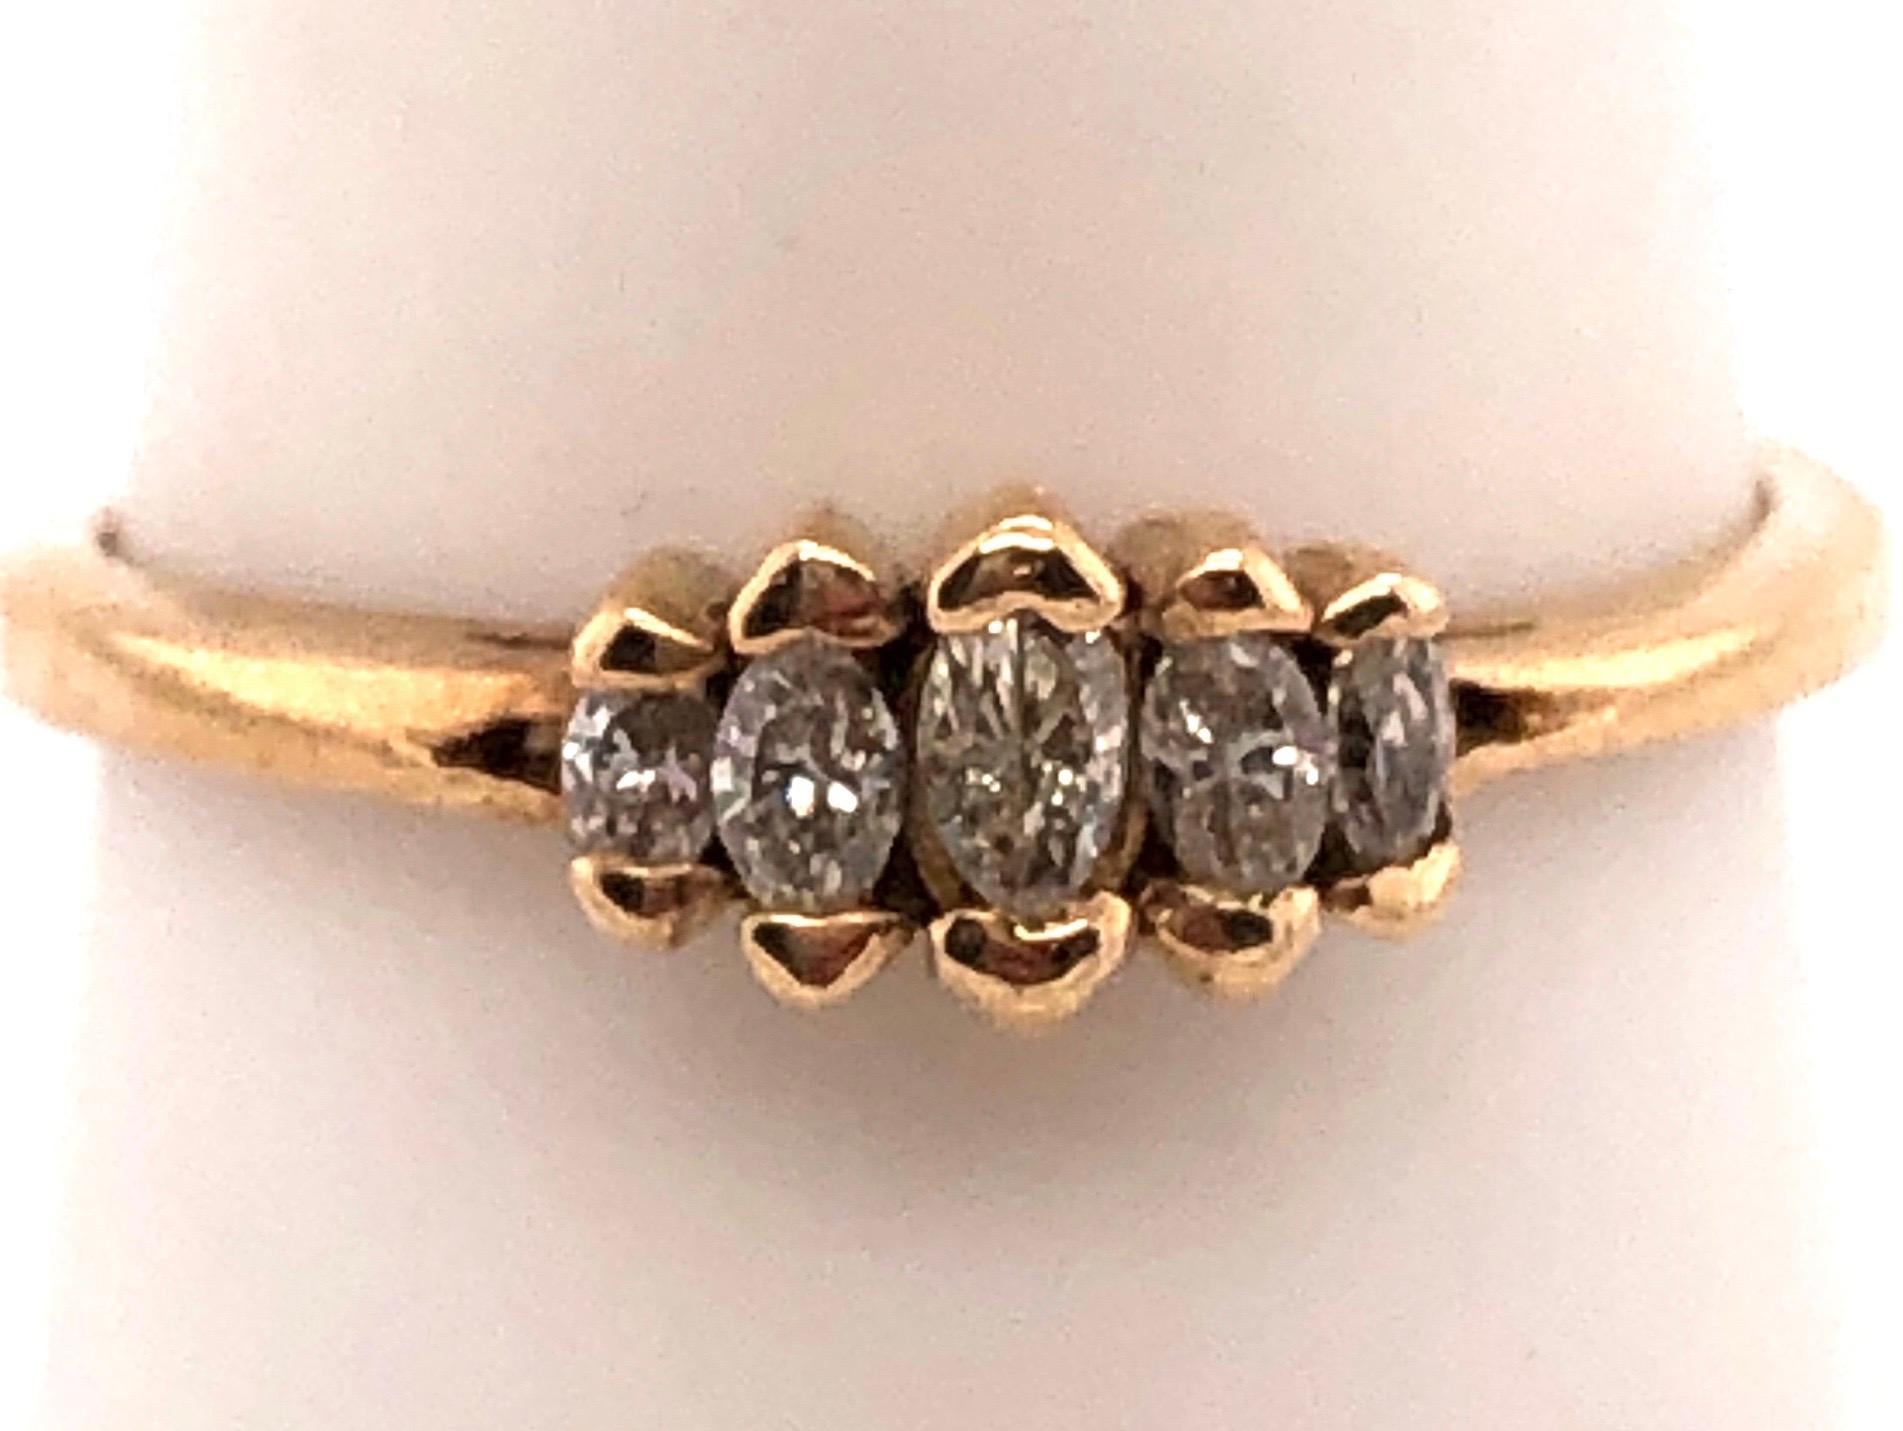 14 Karat Yellow Gold Five Stones Diamond Ring 0.25 TDW.
Size 9
3 grams total weight.